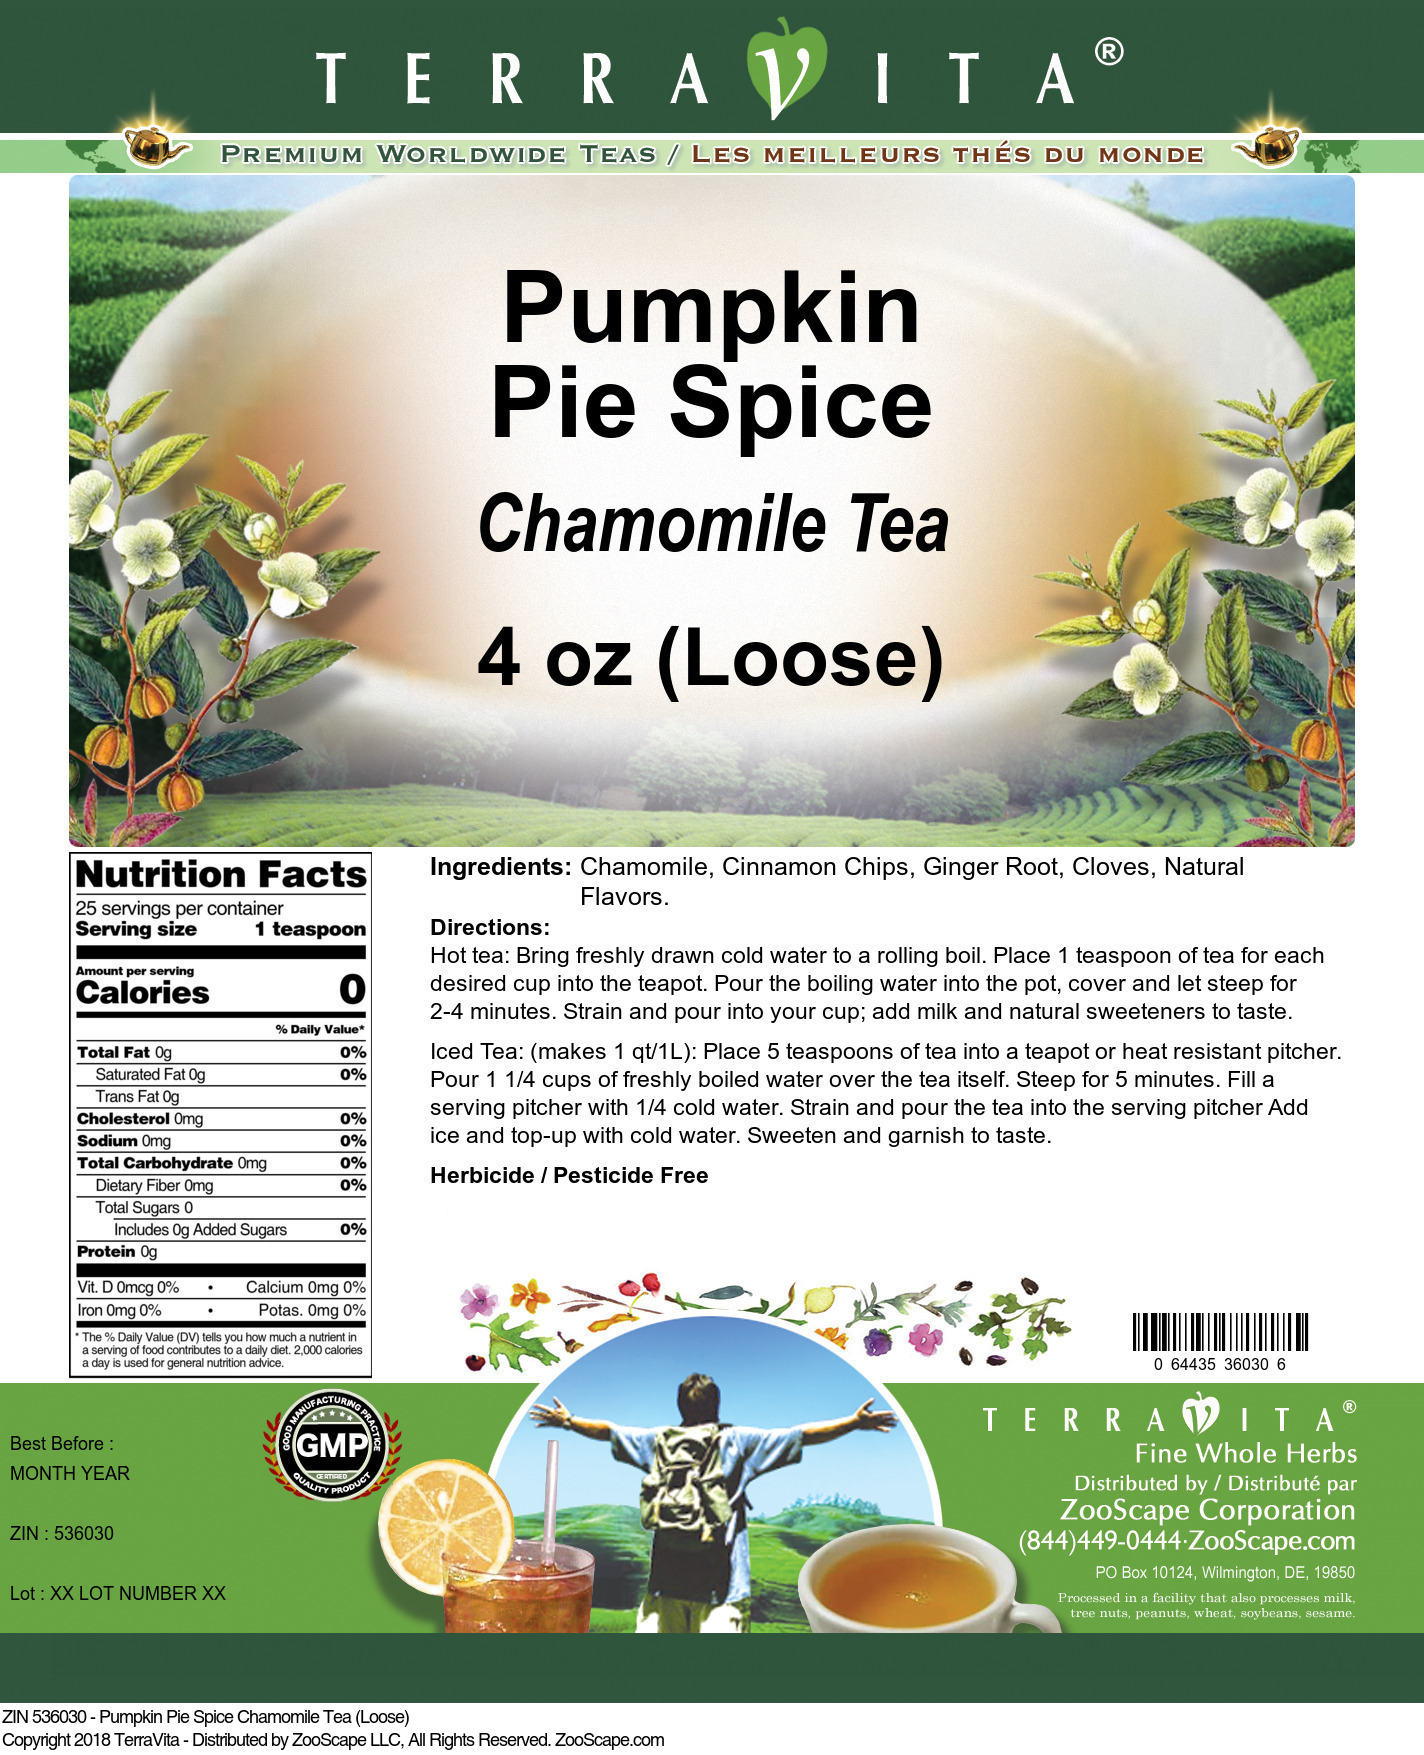 Pumpkin Pie Spice Chamomile Tea (Loose) - Label